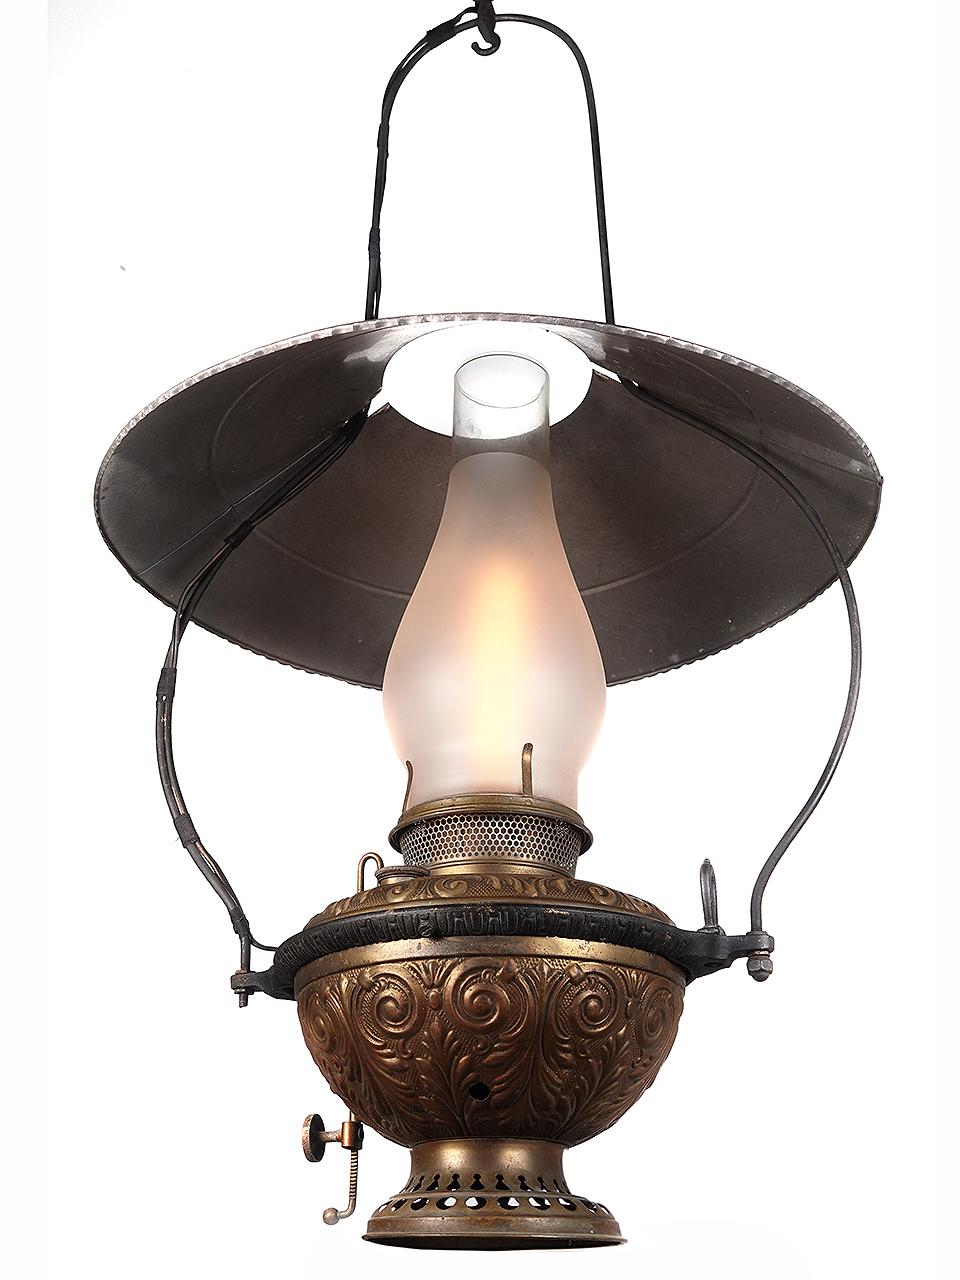 Dies ist eine große, beeindruckende Öllampe aus der Zeit um 1883. Es handelt sich um den Typ, der damals hauptsächlich in Salons und Gemischtwarenläden verwendet wurde. Dies ist ein seltener Überlebenskünstler.